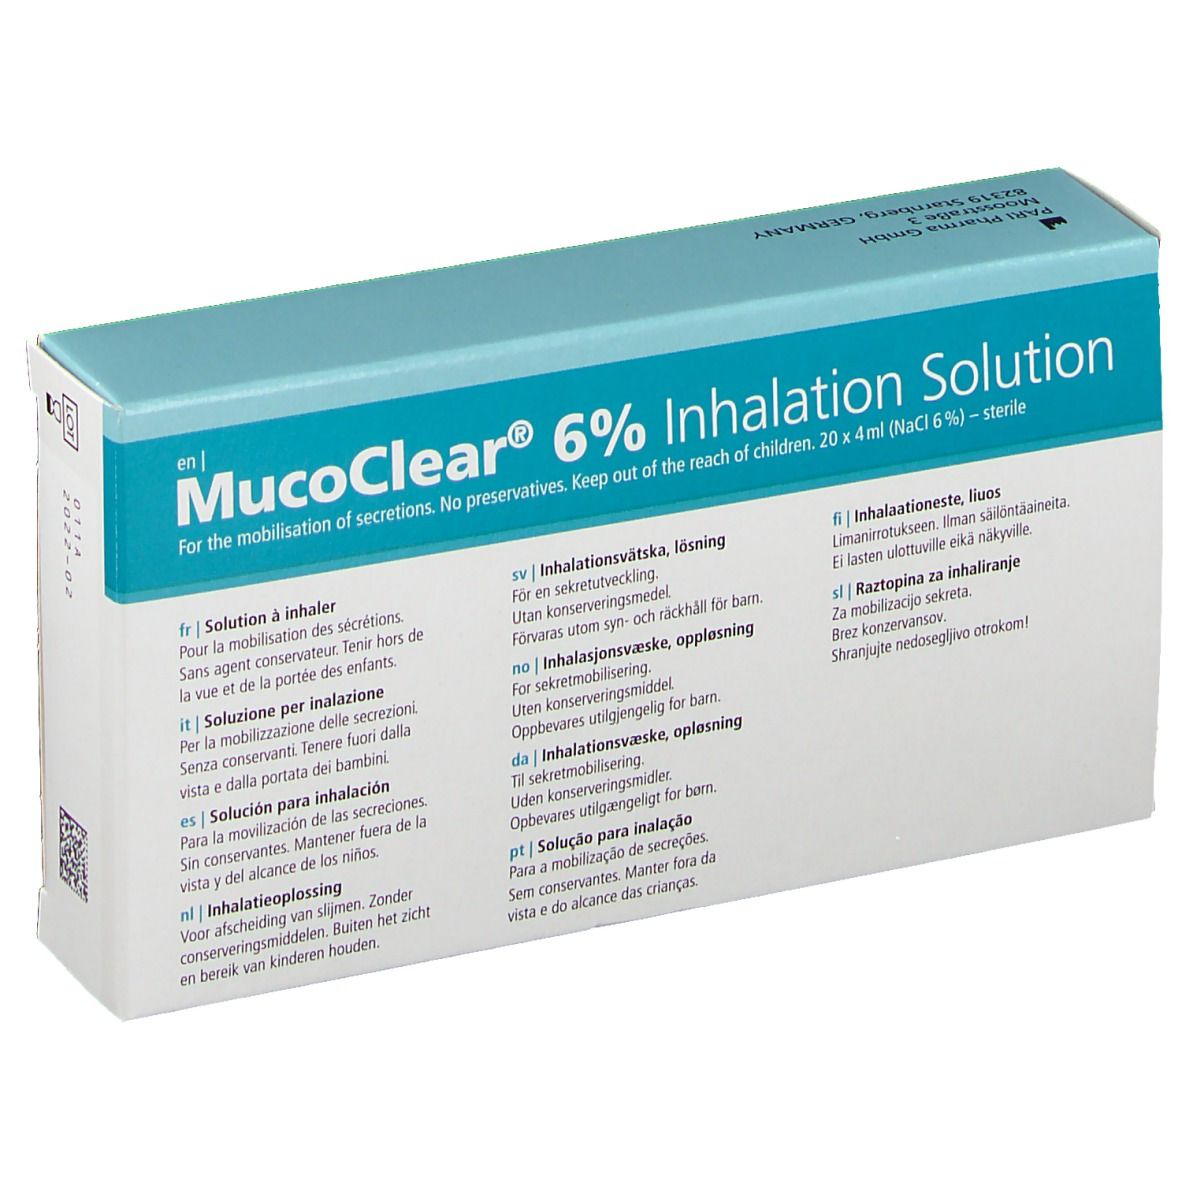 MucoClear 6%® Inhalationslösung